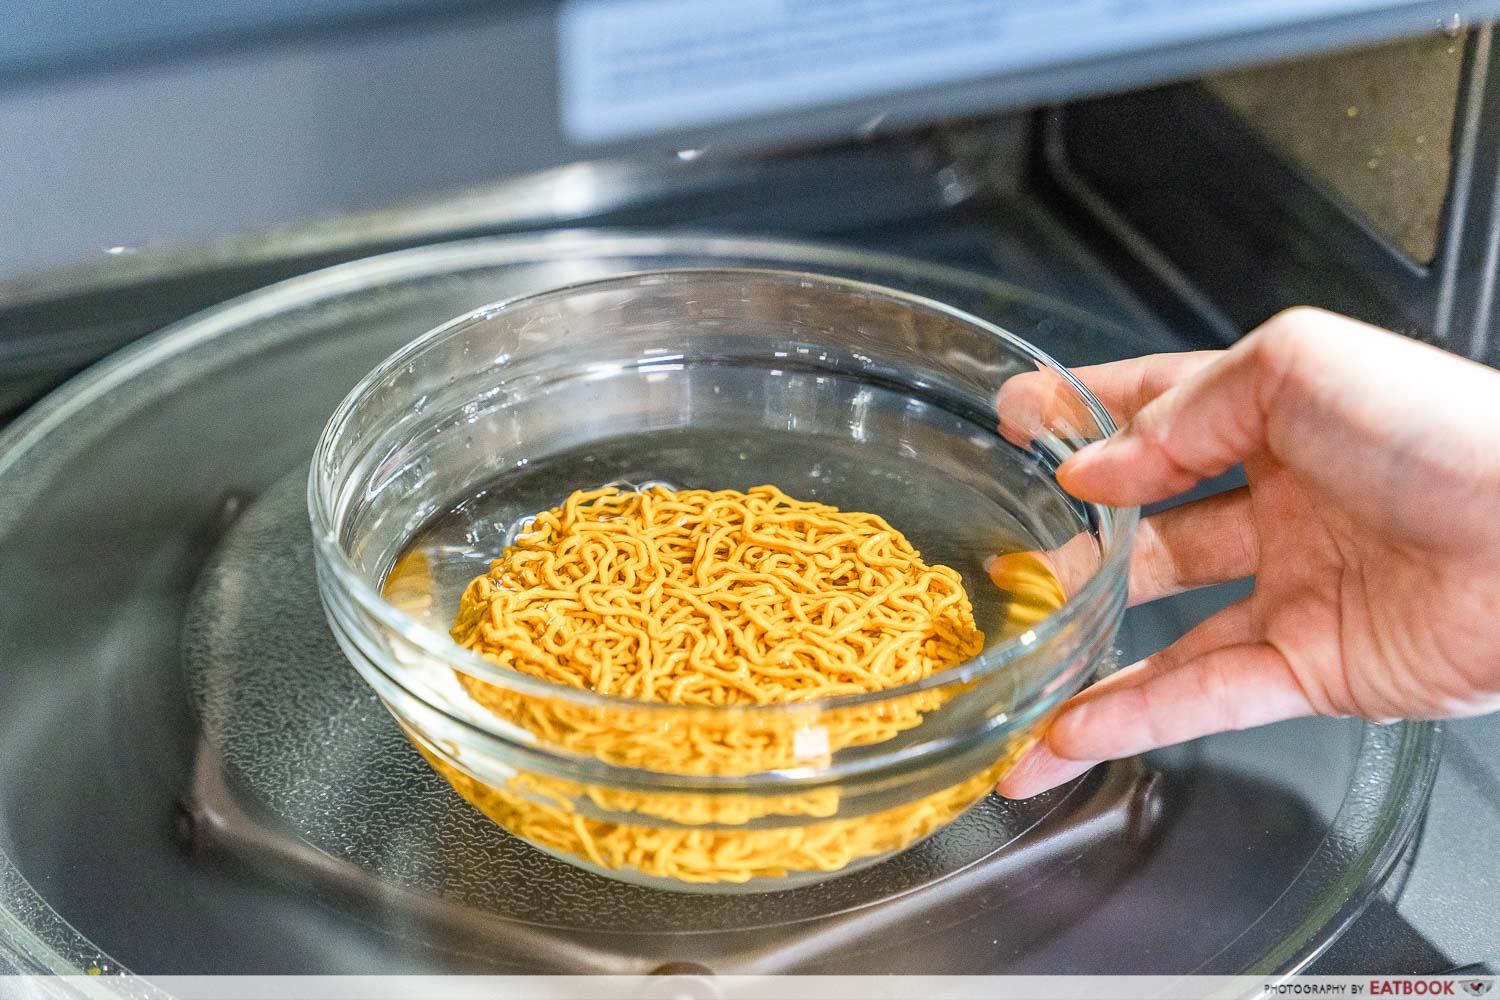 whatif foods - micowaving noodles